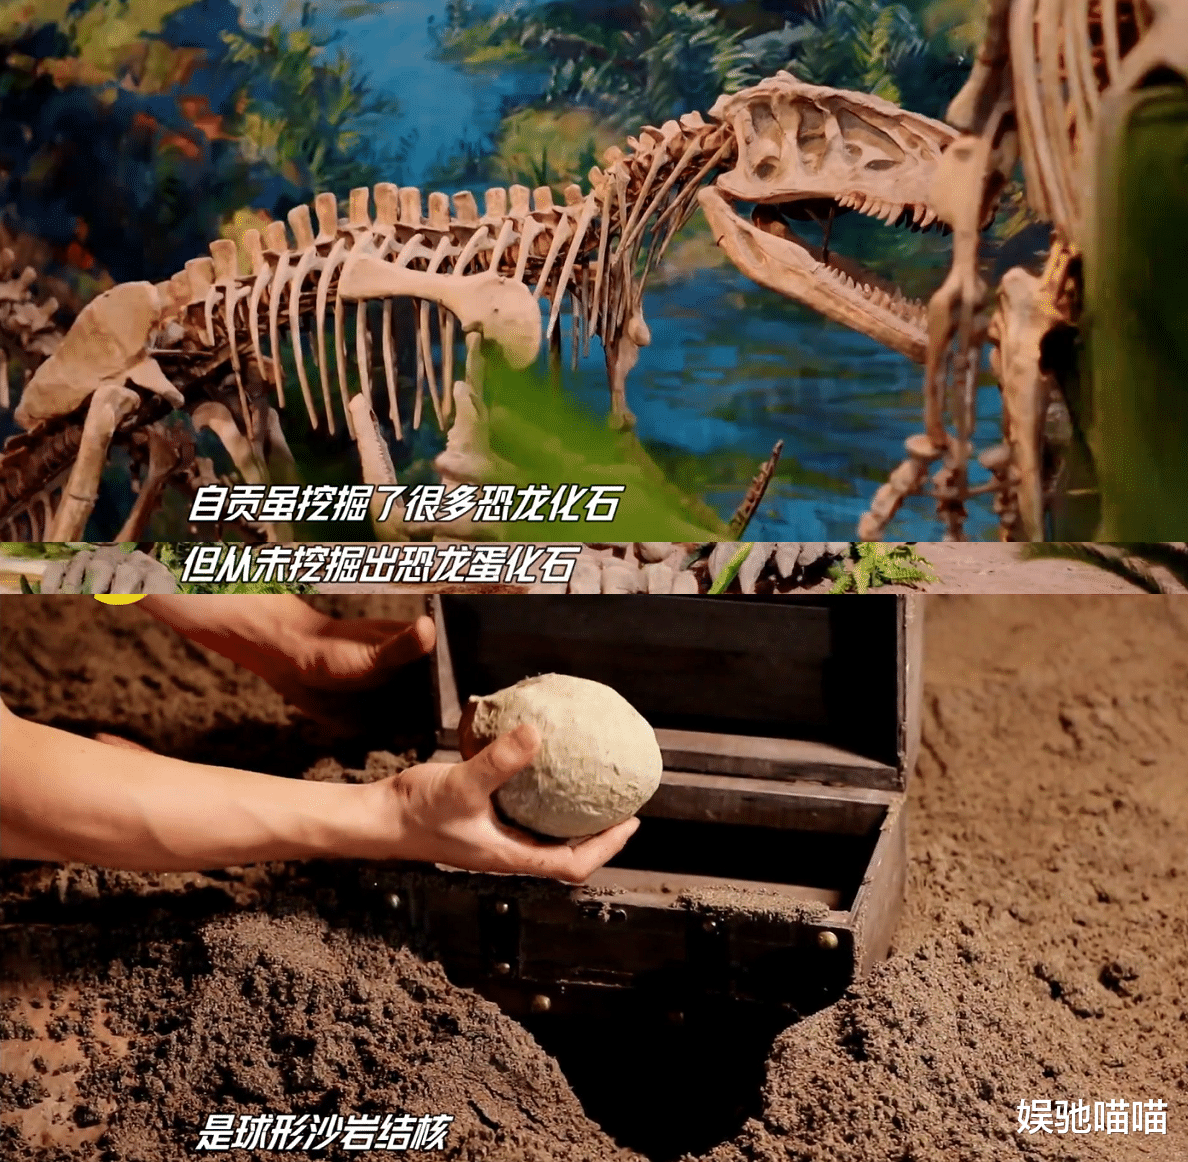 恐龙 天天向上：王一博拉恐龙尾巴，差点敲坏化石？是暖心聪明的皮孩子